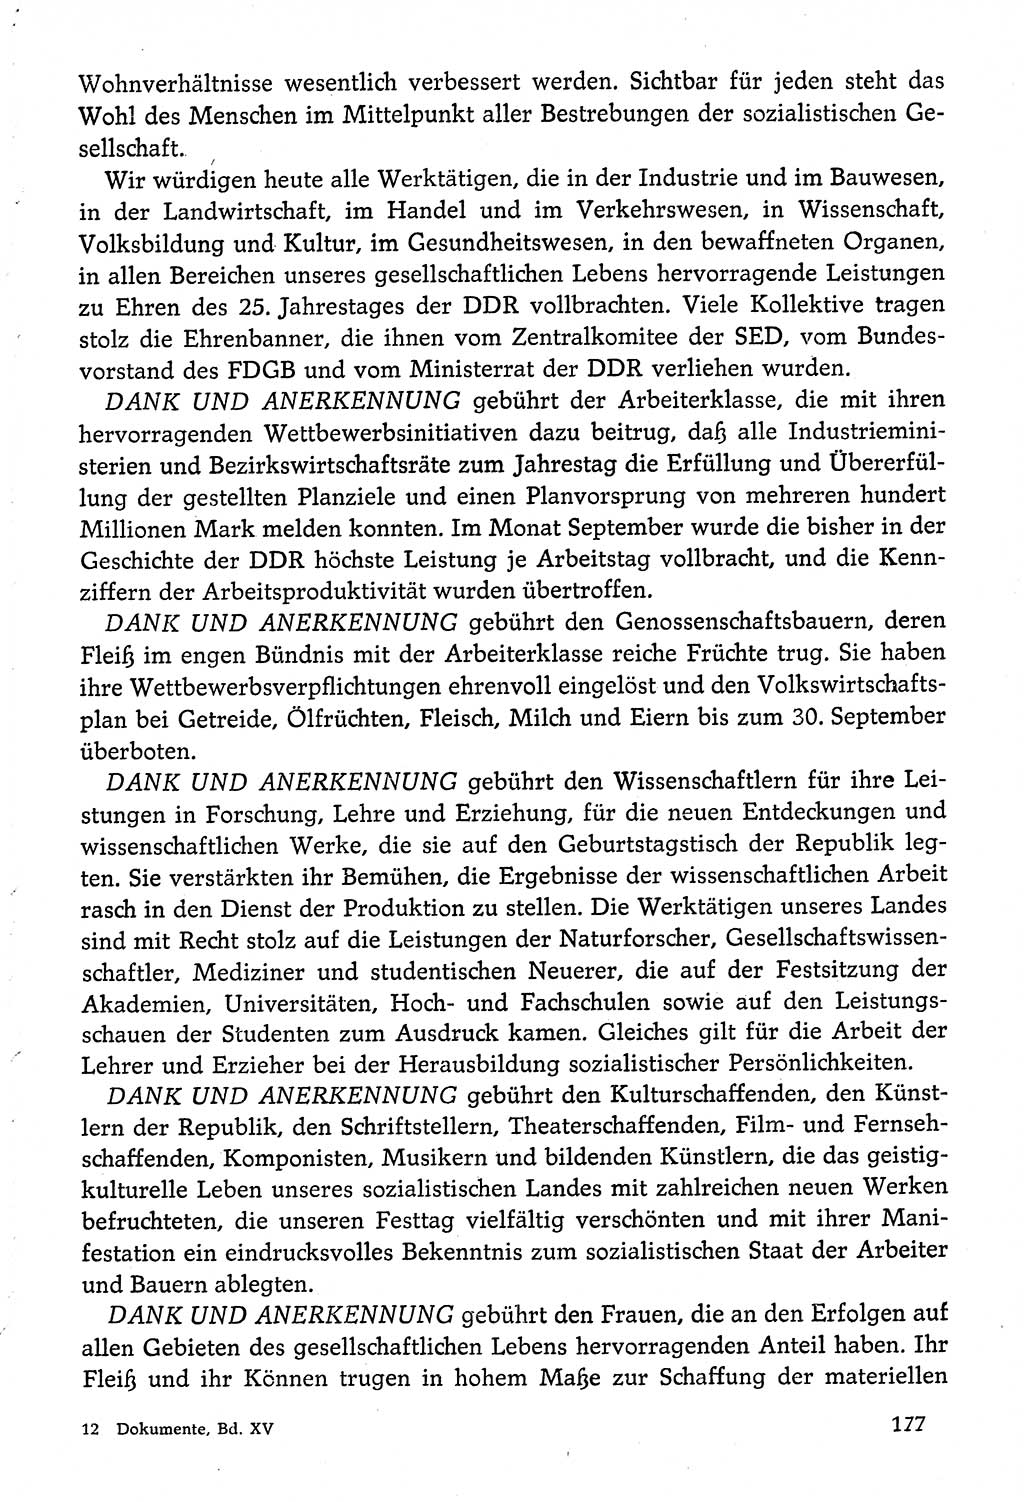 Dokumente der Sozialistischen Einheitspartei Deutschlands (SED) [Deutsche Demokratische Republik (DDR)] 1974-1975, Seite 177 (Dok. SED DDR 1978, Bd. ⅩⅤ, S. 177)